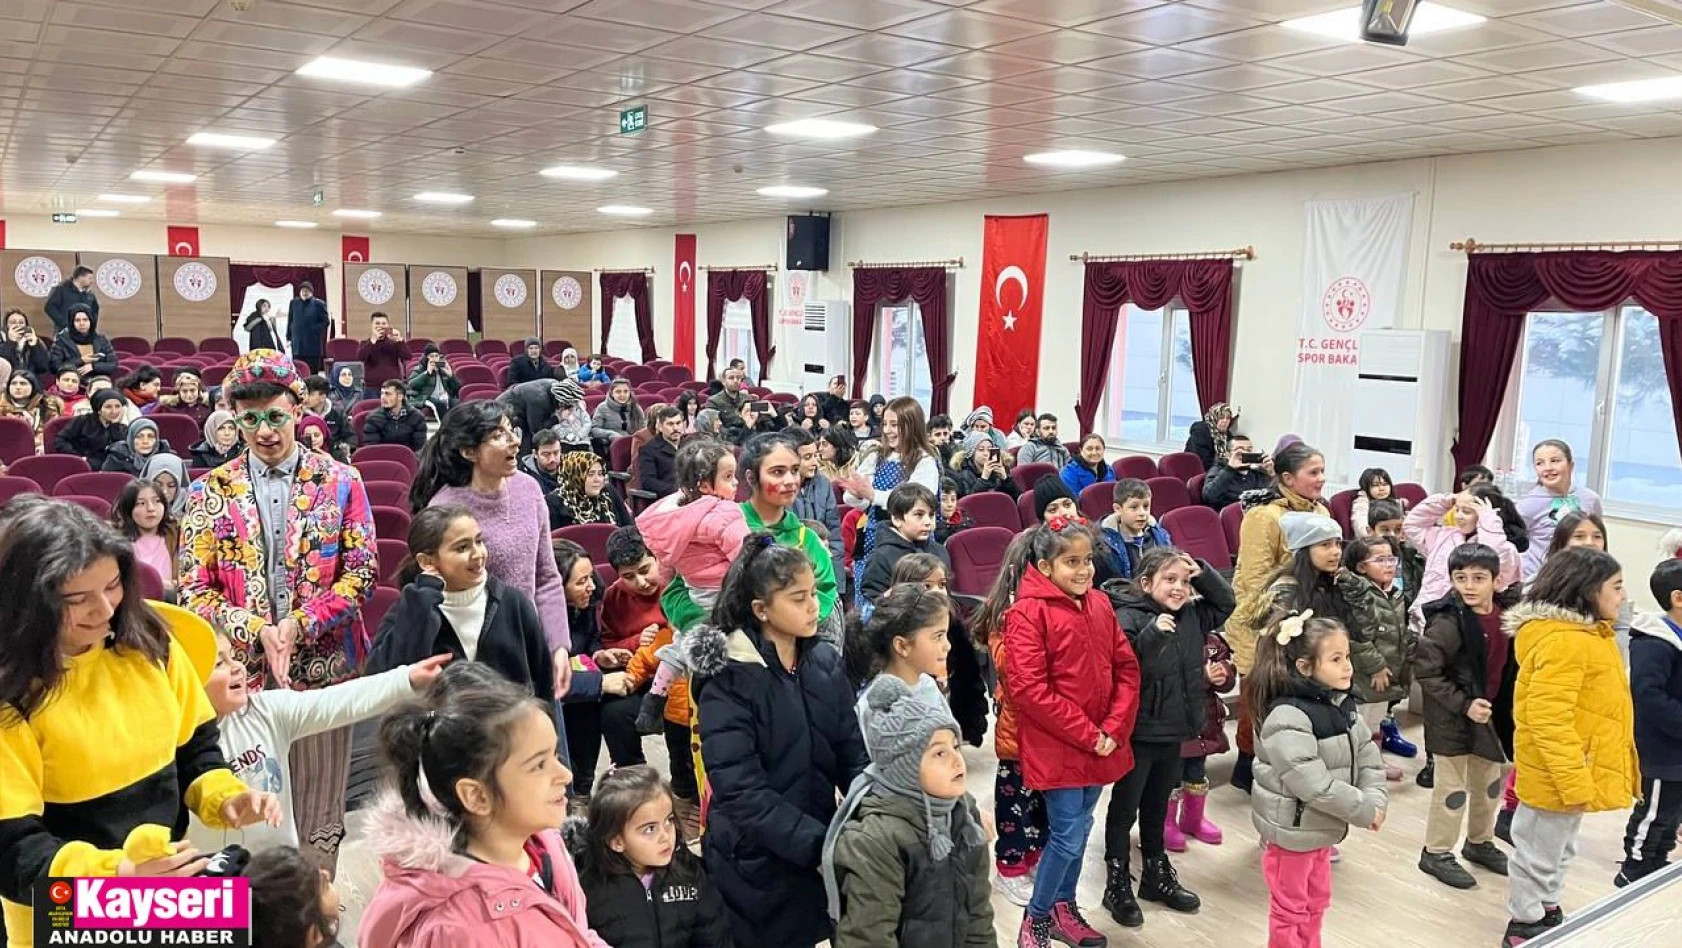 Kayseri'ye gelen 9 bin depremzede yurtlara yerleştirildi